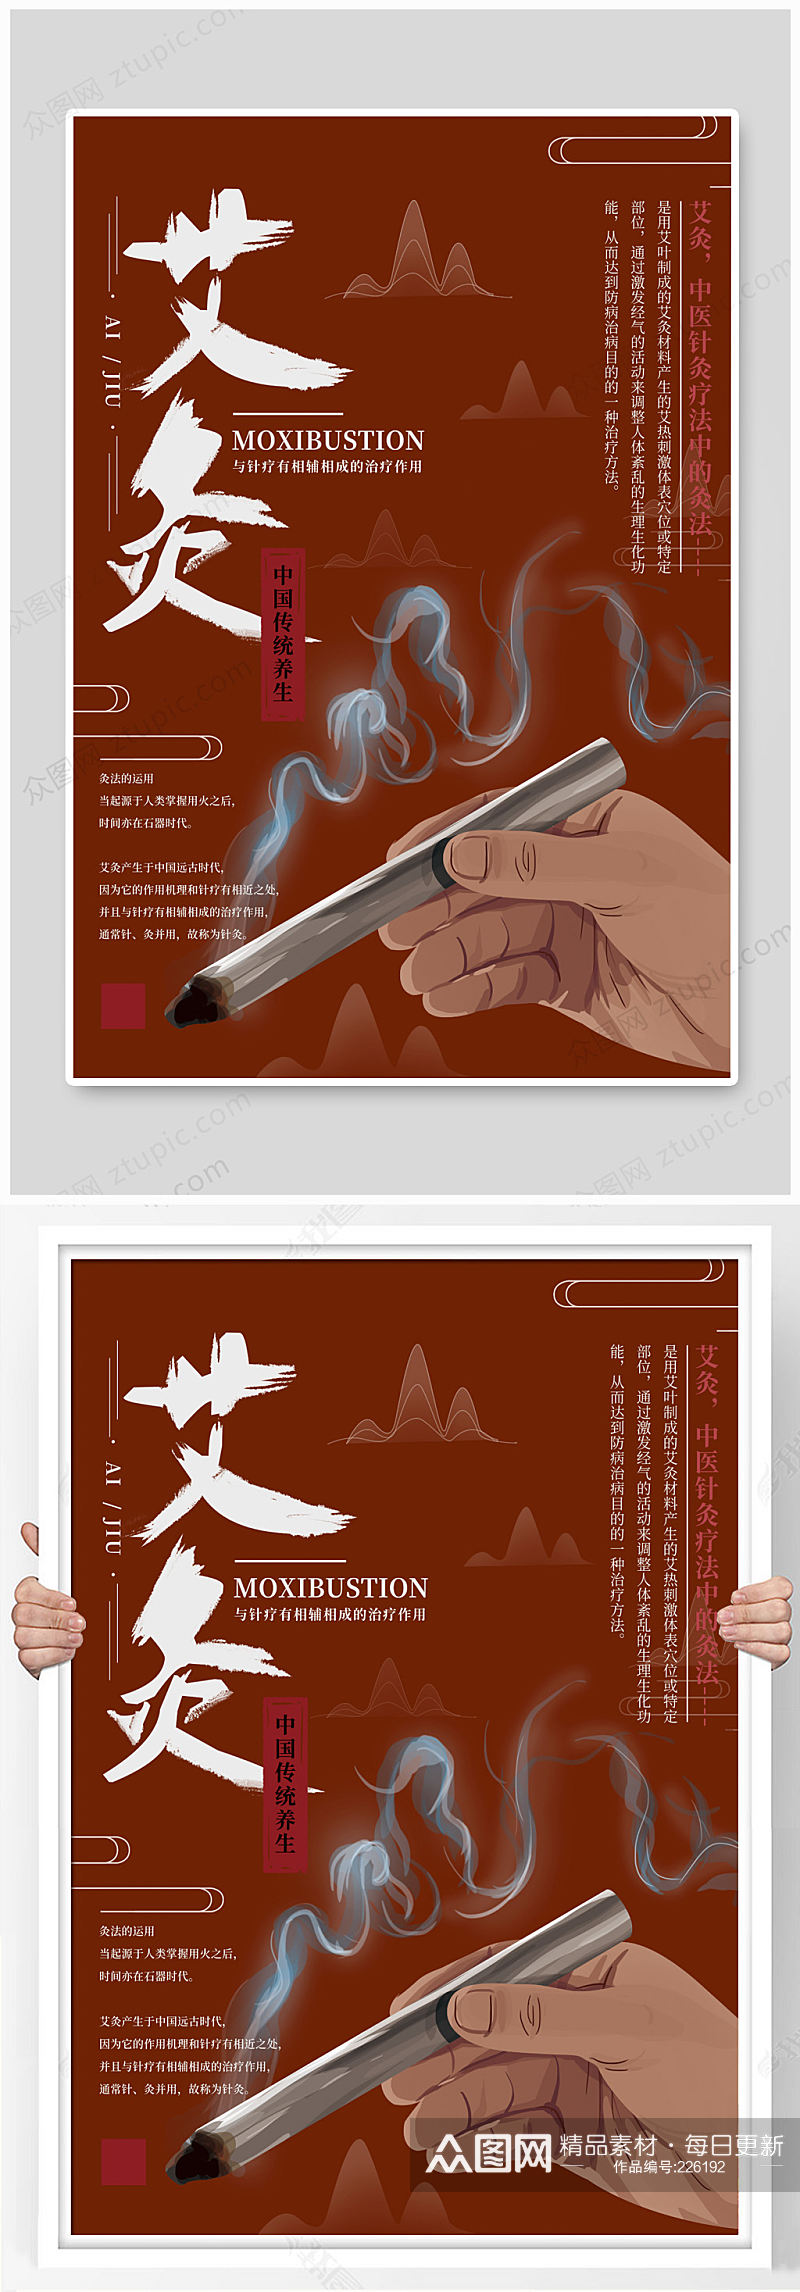 中医传统养生艾灸海报  展板素材